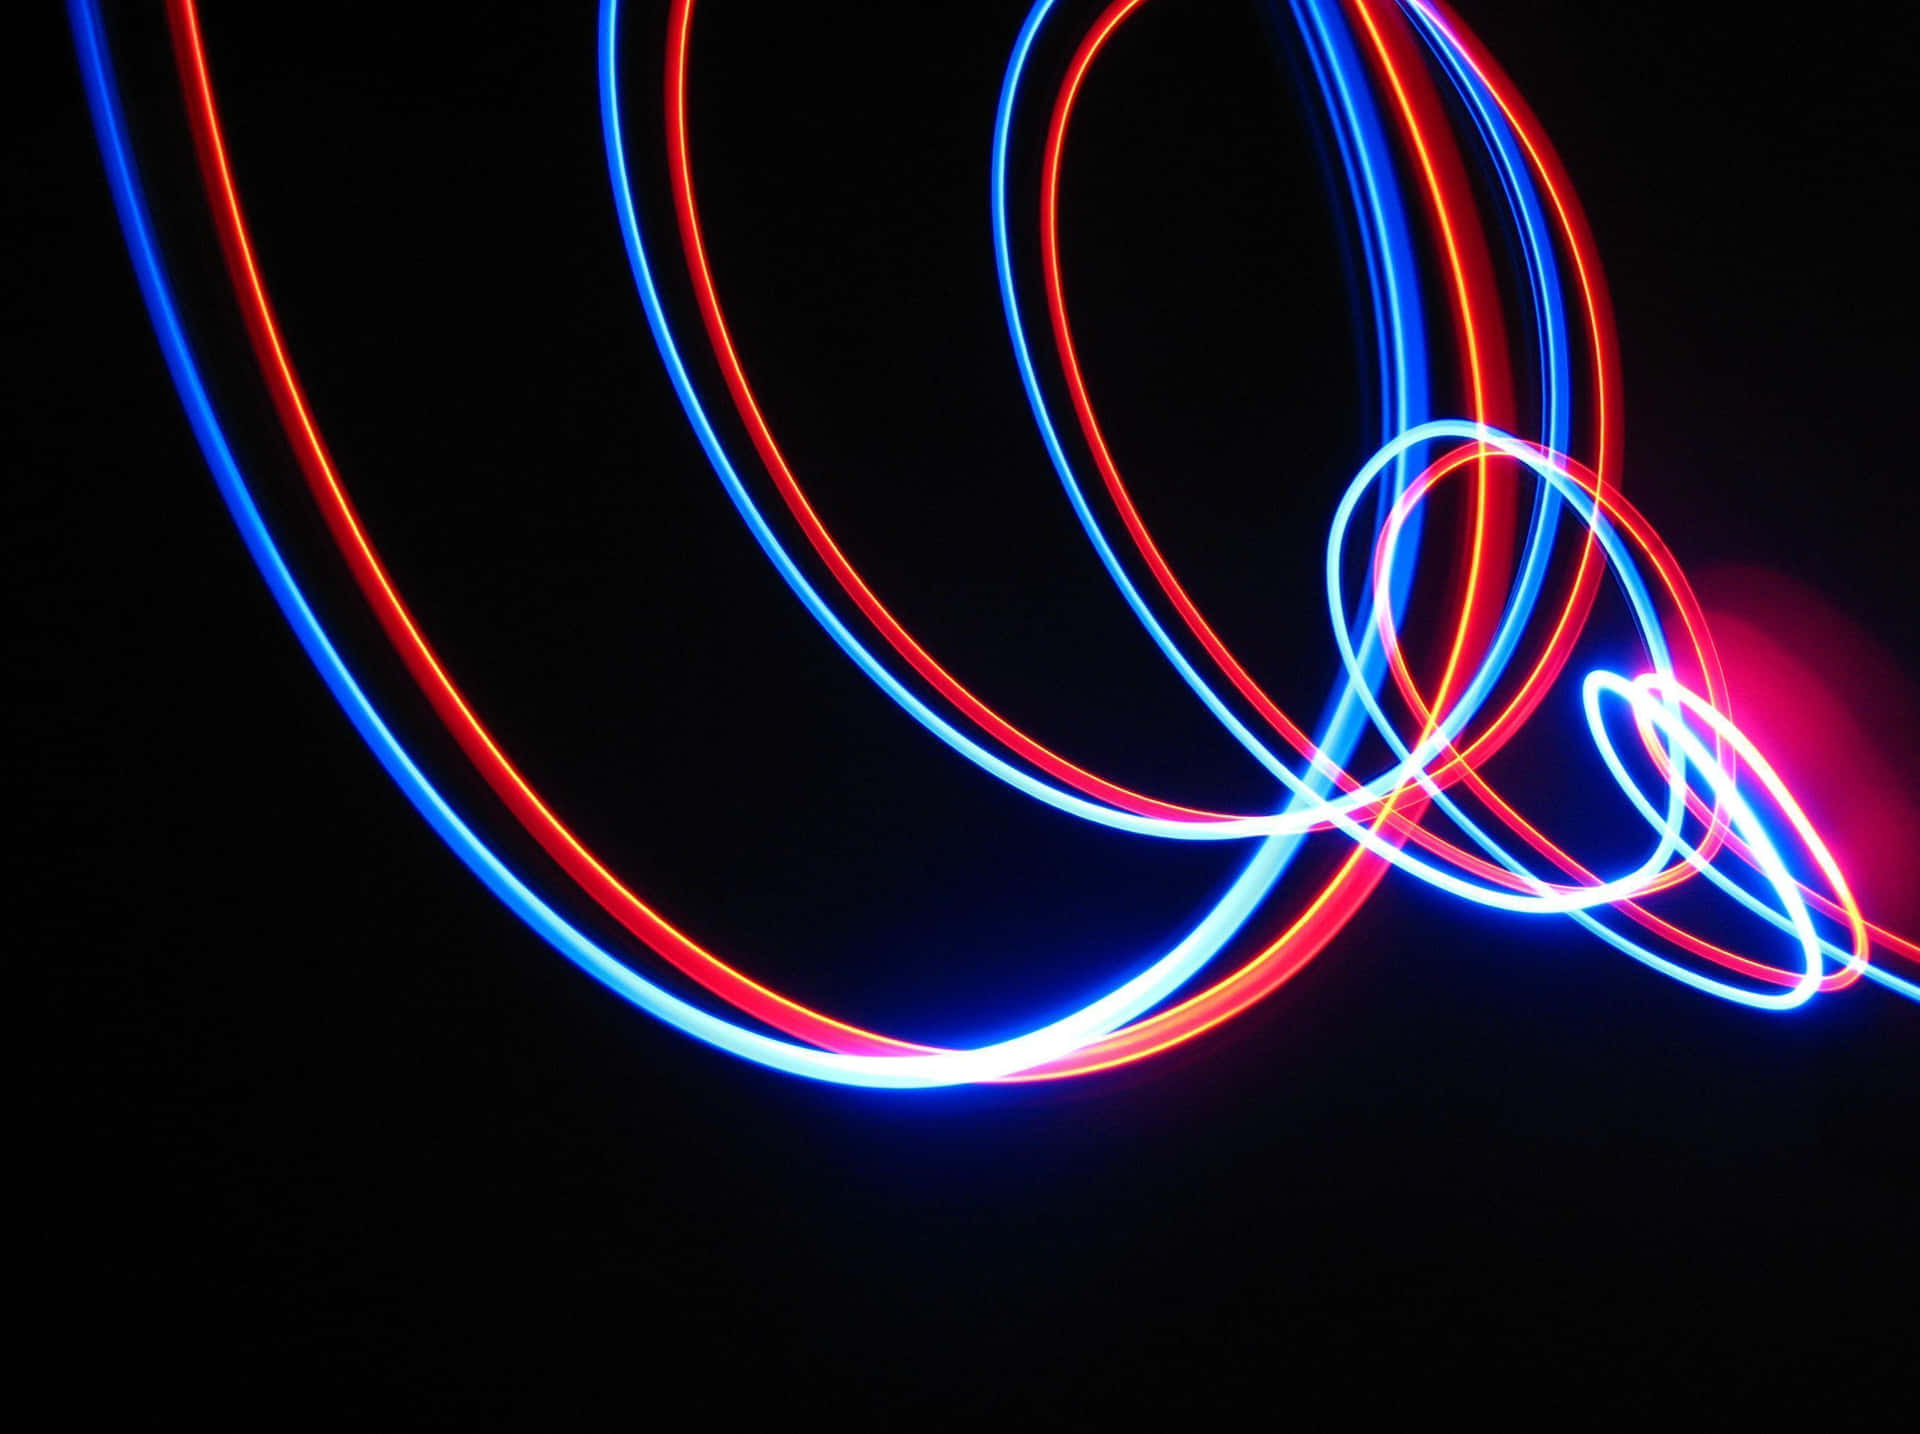 Imagemabstrata De Espiral Em Neon Vermelho E Azul